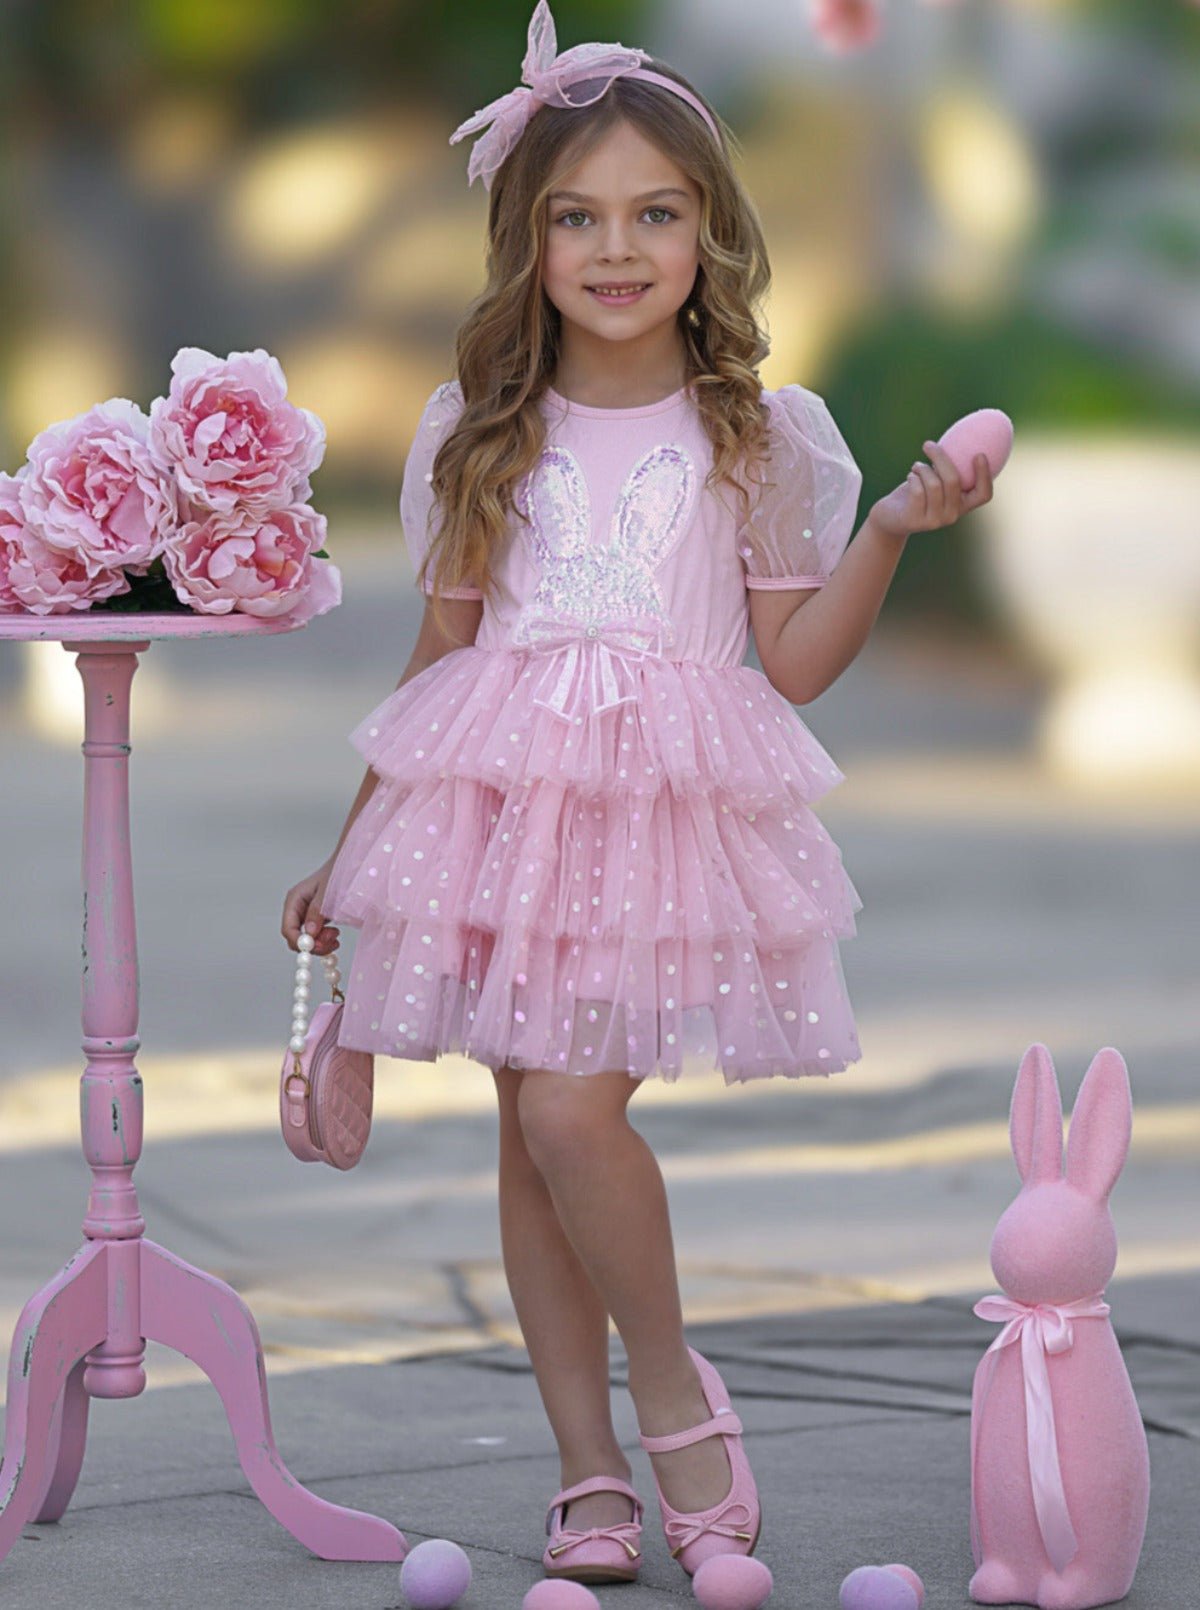 Mia Belle Girls Easter Pink Tutu Dress | Girls Easter Dresses